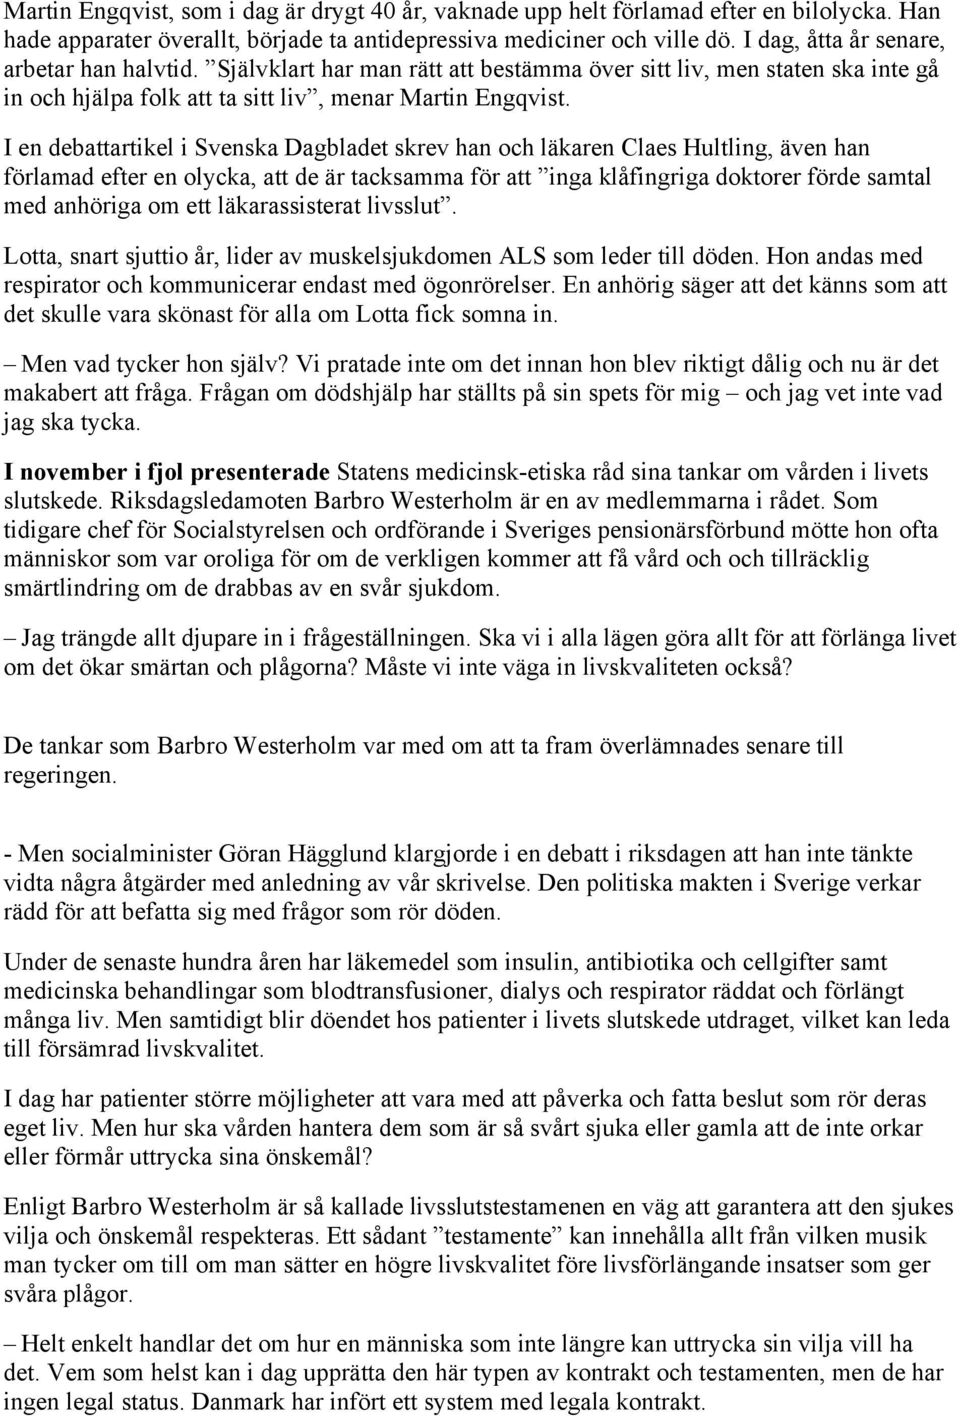 I en debattartikel i Svenska Dagbladet skrev han och läkaren Claes Hultling, även han förlamad efter en olycka, att de är tacksamma för att inga klåfingriga doktorer förde samtal med anhöriga om ett